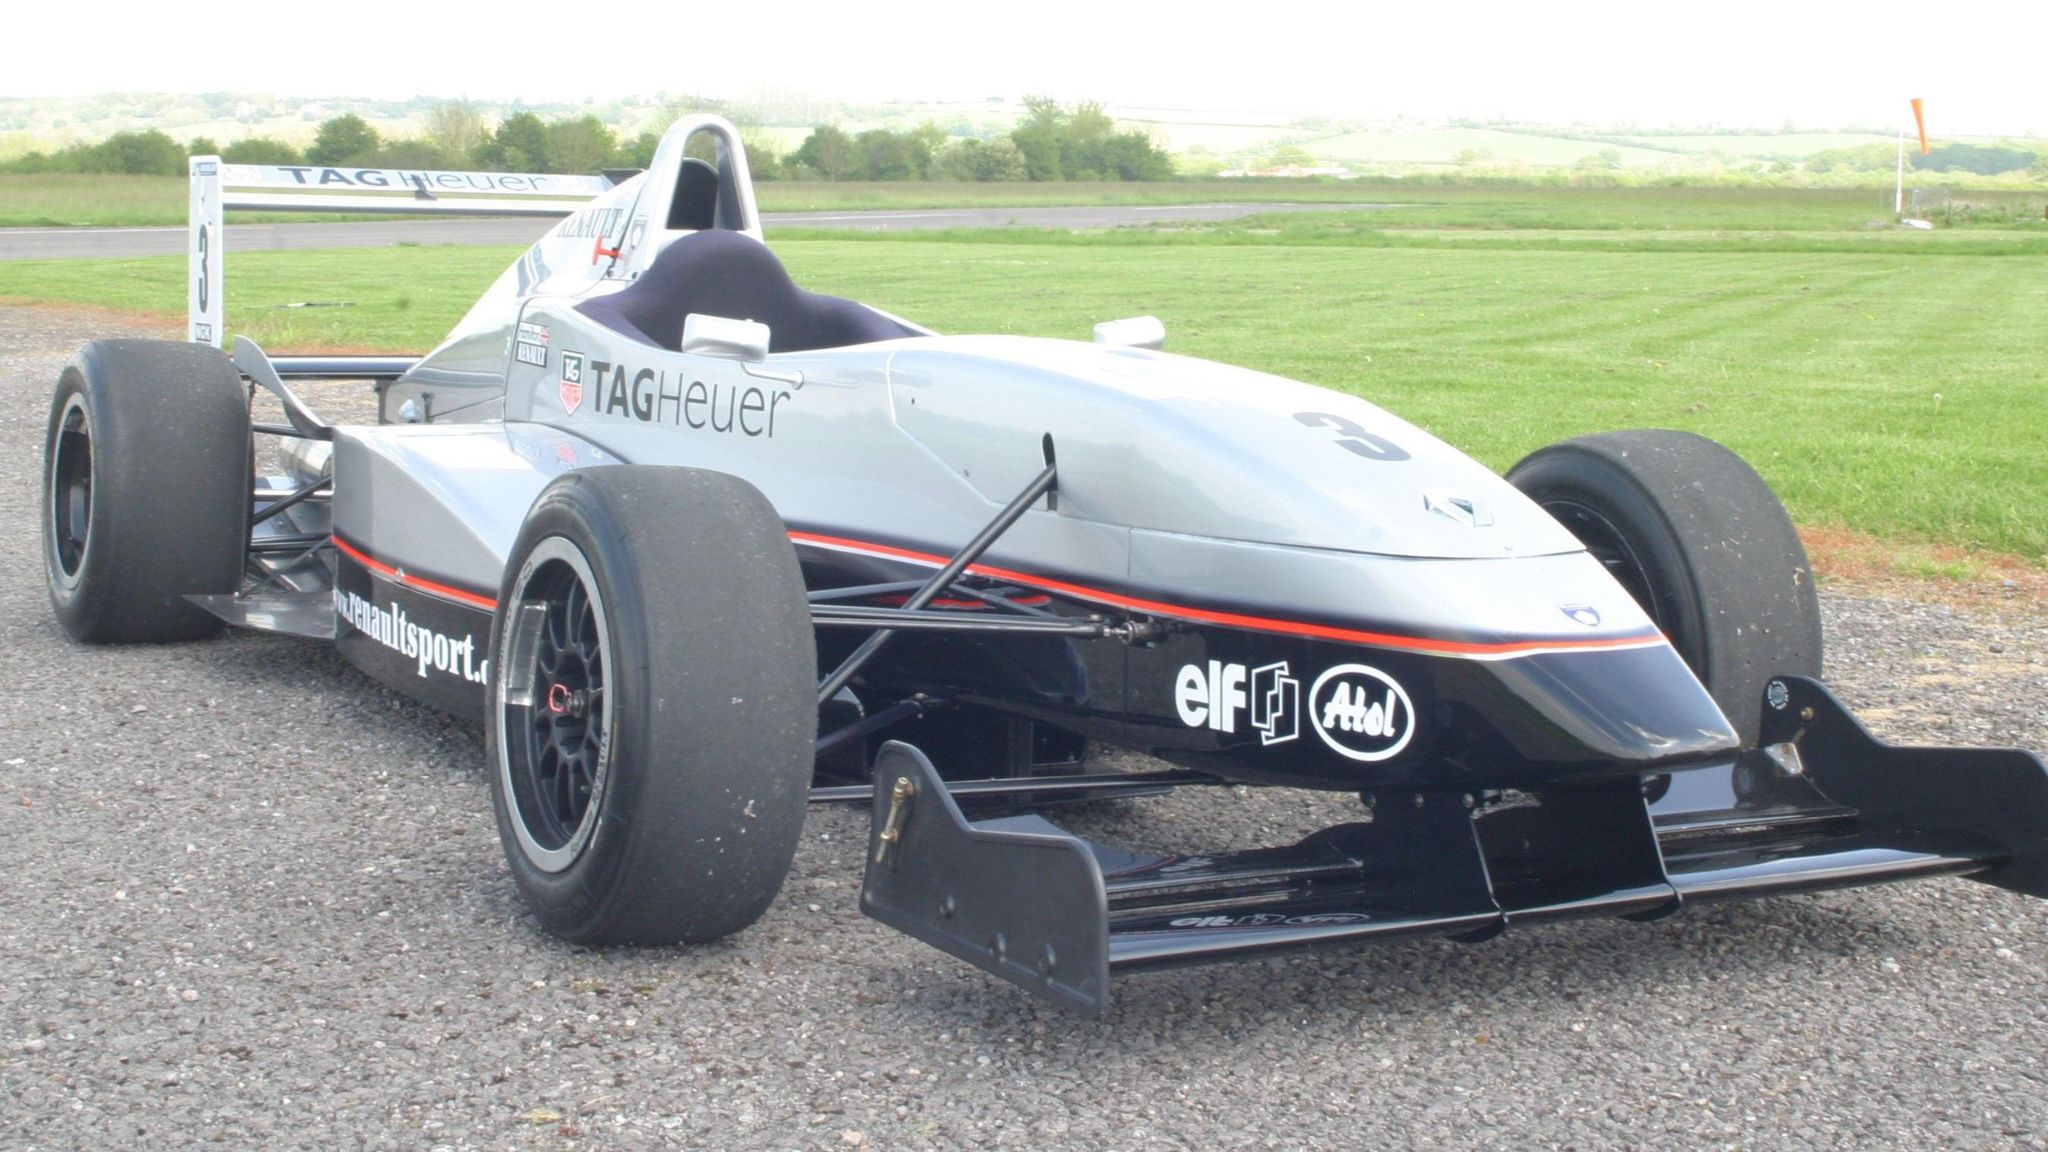 A Formula series racing car that Lewis Hamilton drove in 2003